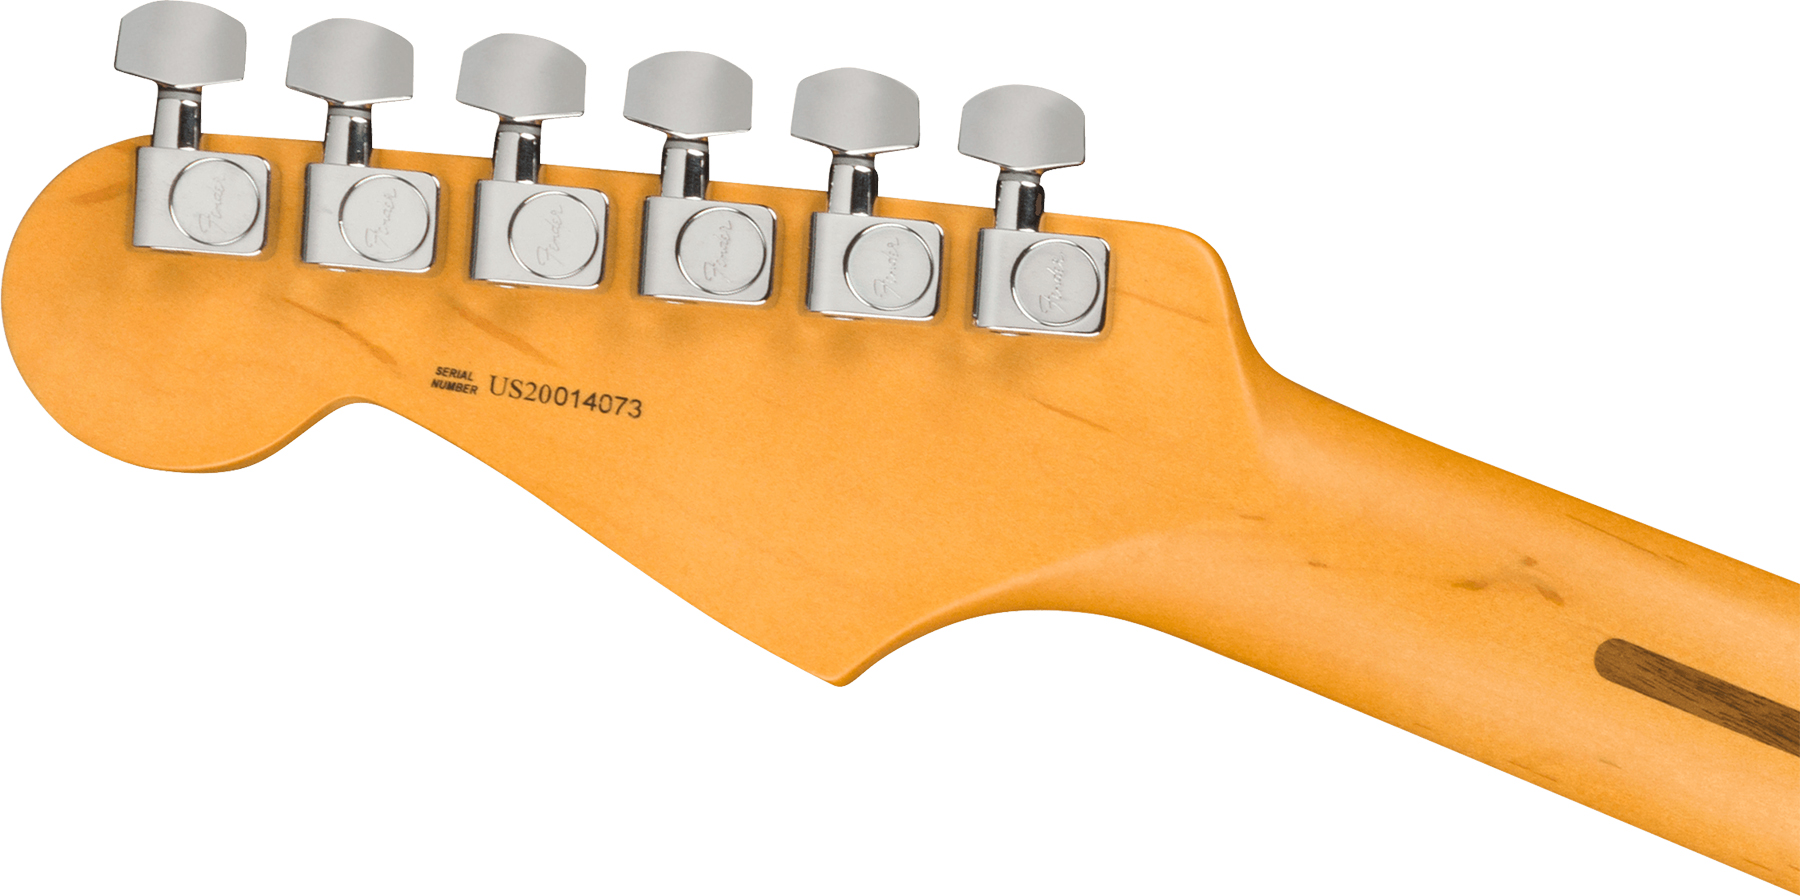 Fender Strat American Professional Ii Usa Mn - 3-color Sunburst - E-Gitarre in Str-Form - Variation 3